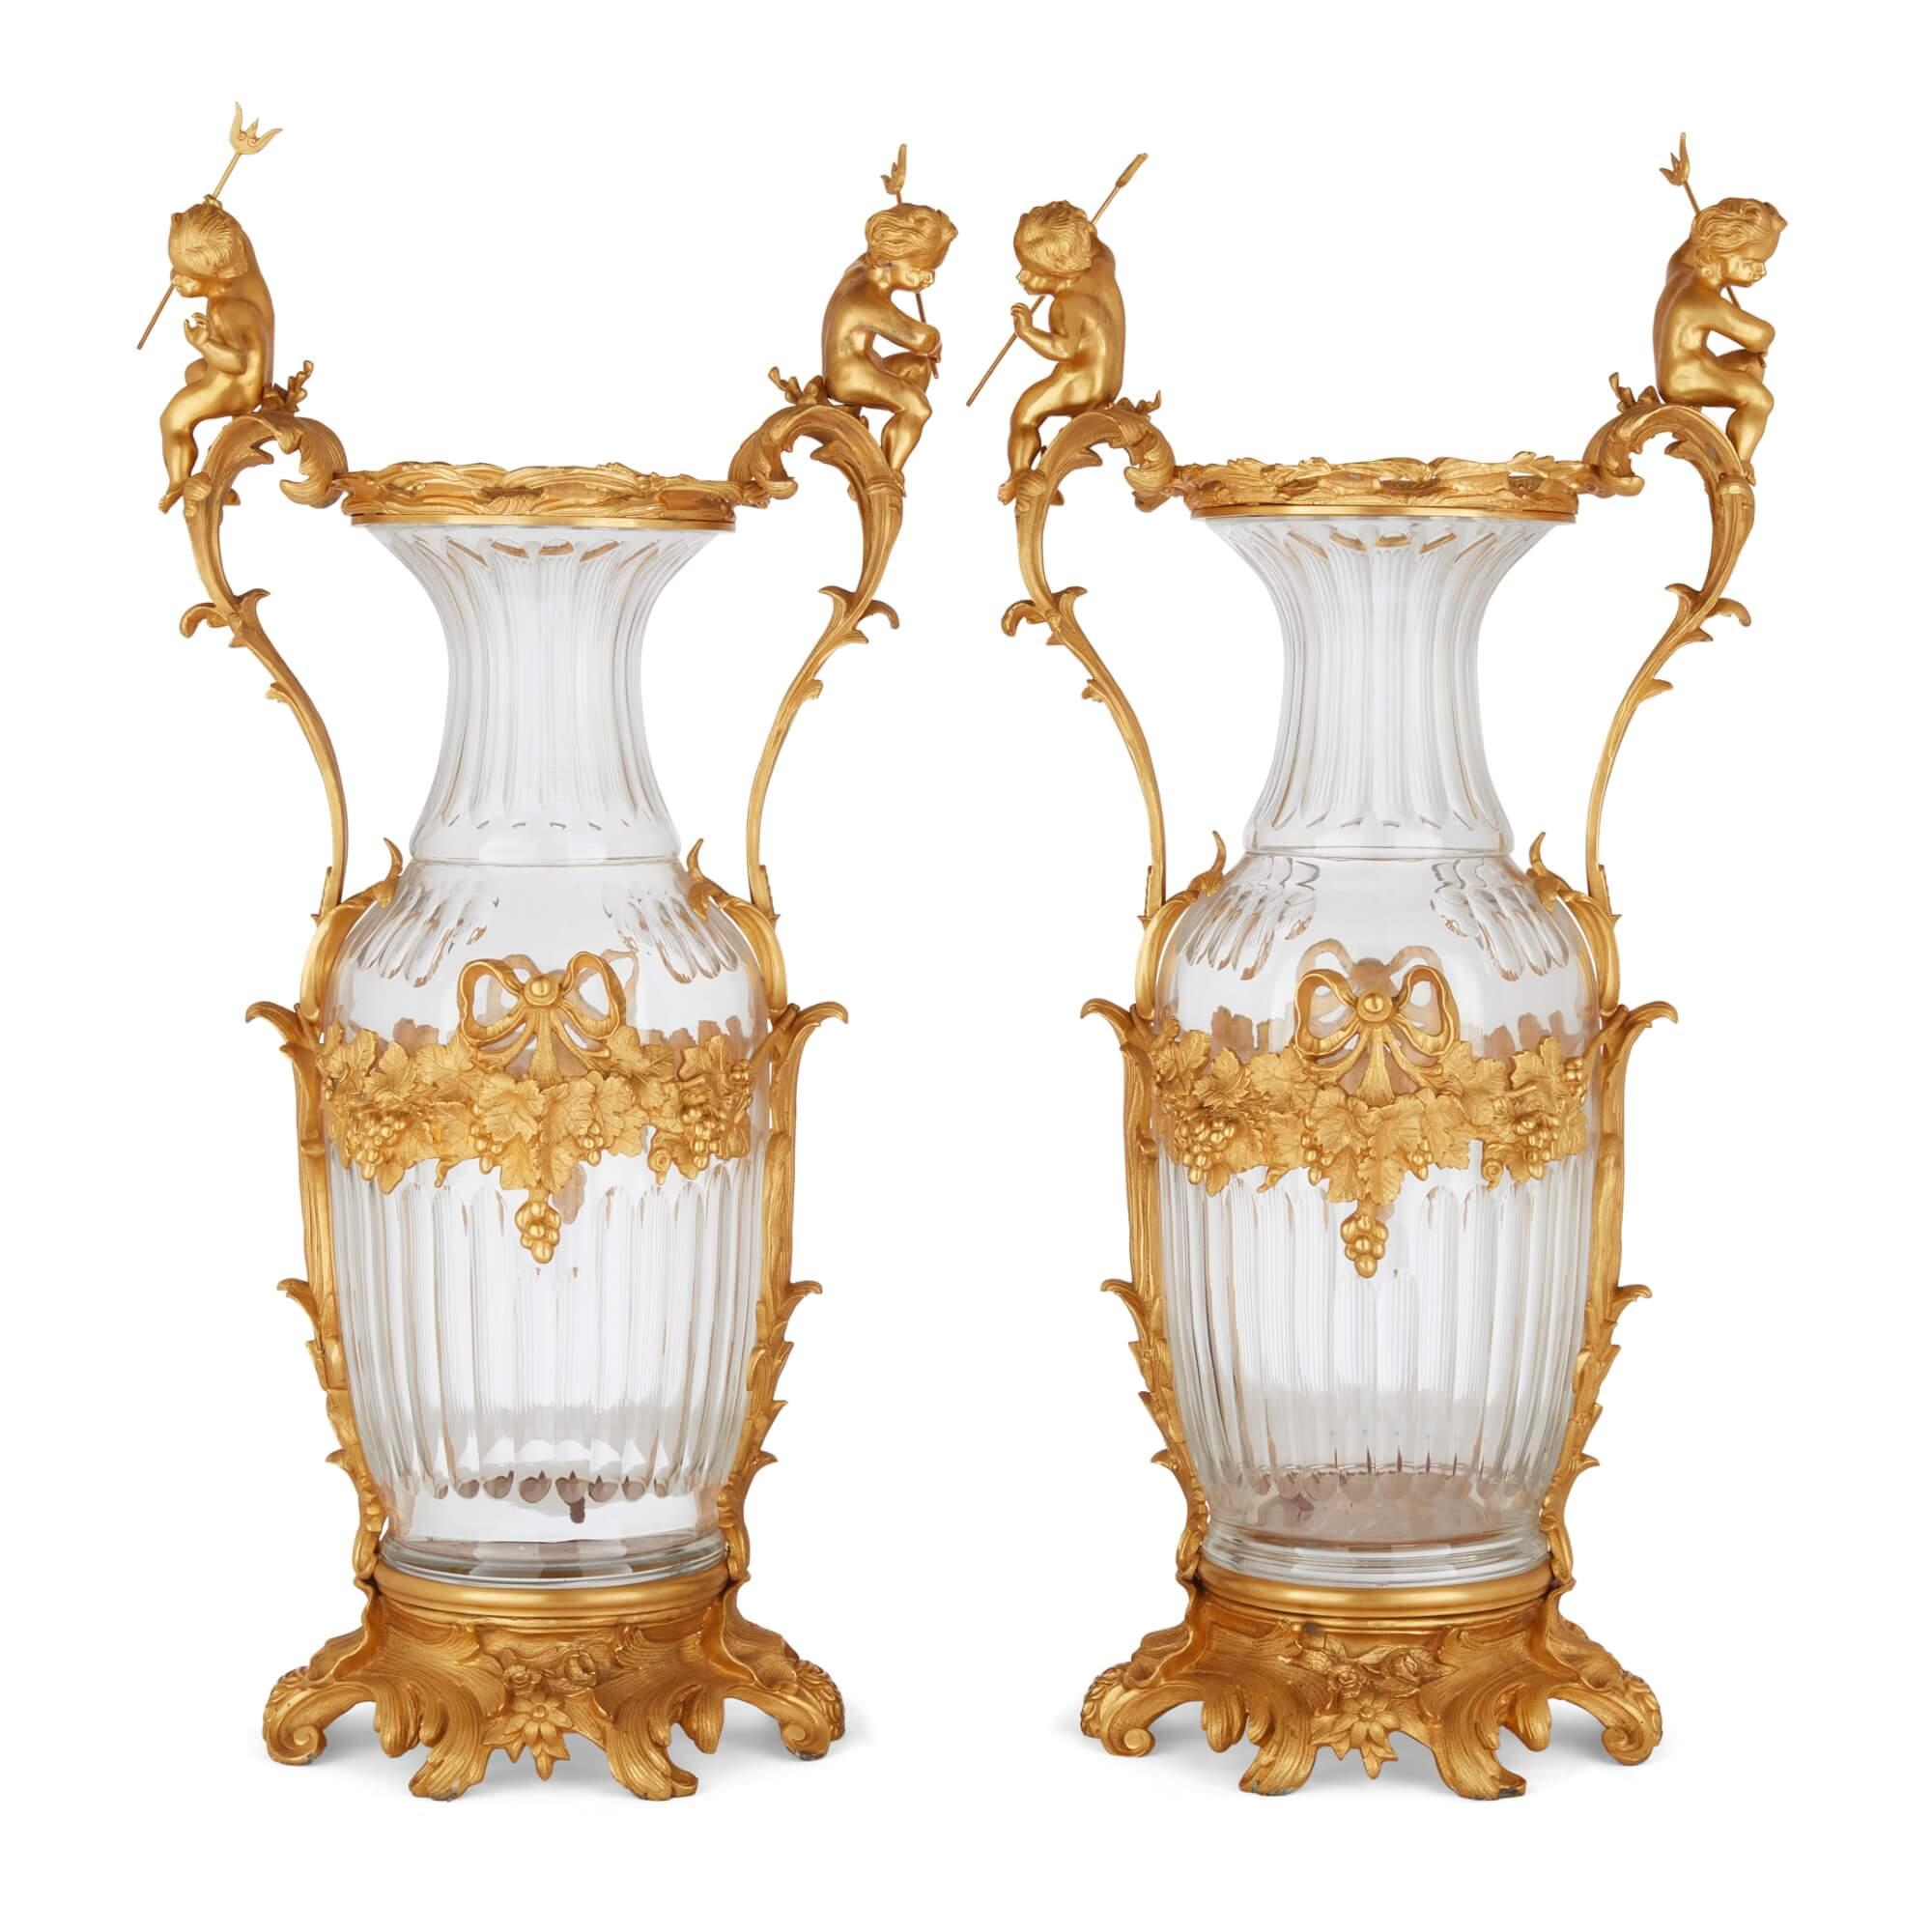 Grande paire de vases en verre taillé, montés en bronze doré, de style rococo français 
Français, 20ème siècle 
Hauteur 89 cm, largeur 43 cm, profondeur 32 cm

Les vases sont fabriqués à partir de matériaux de haute qualité et leur design célèbre le